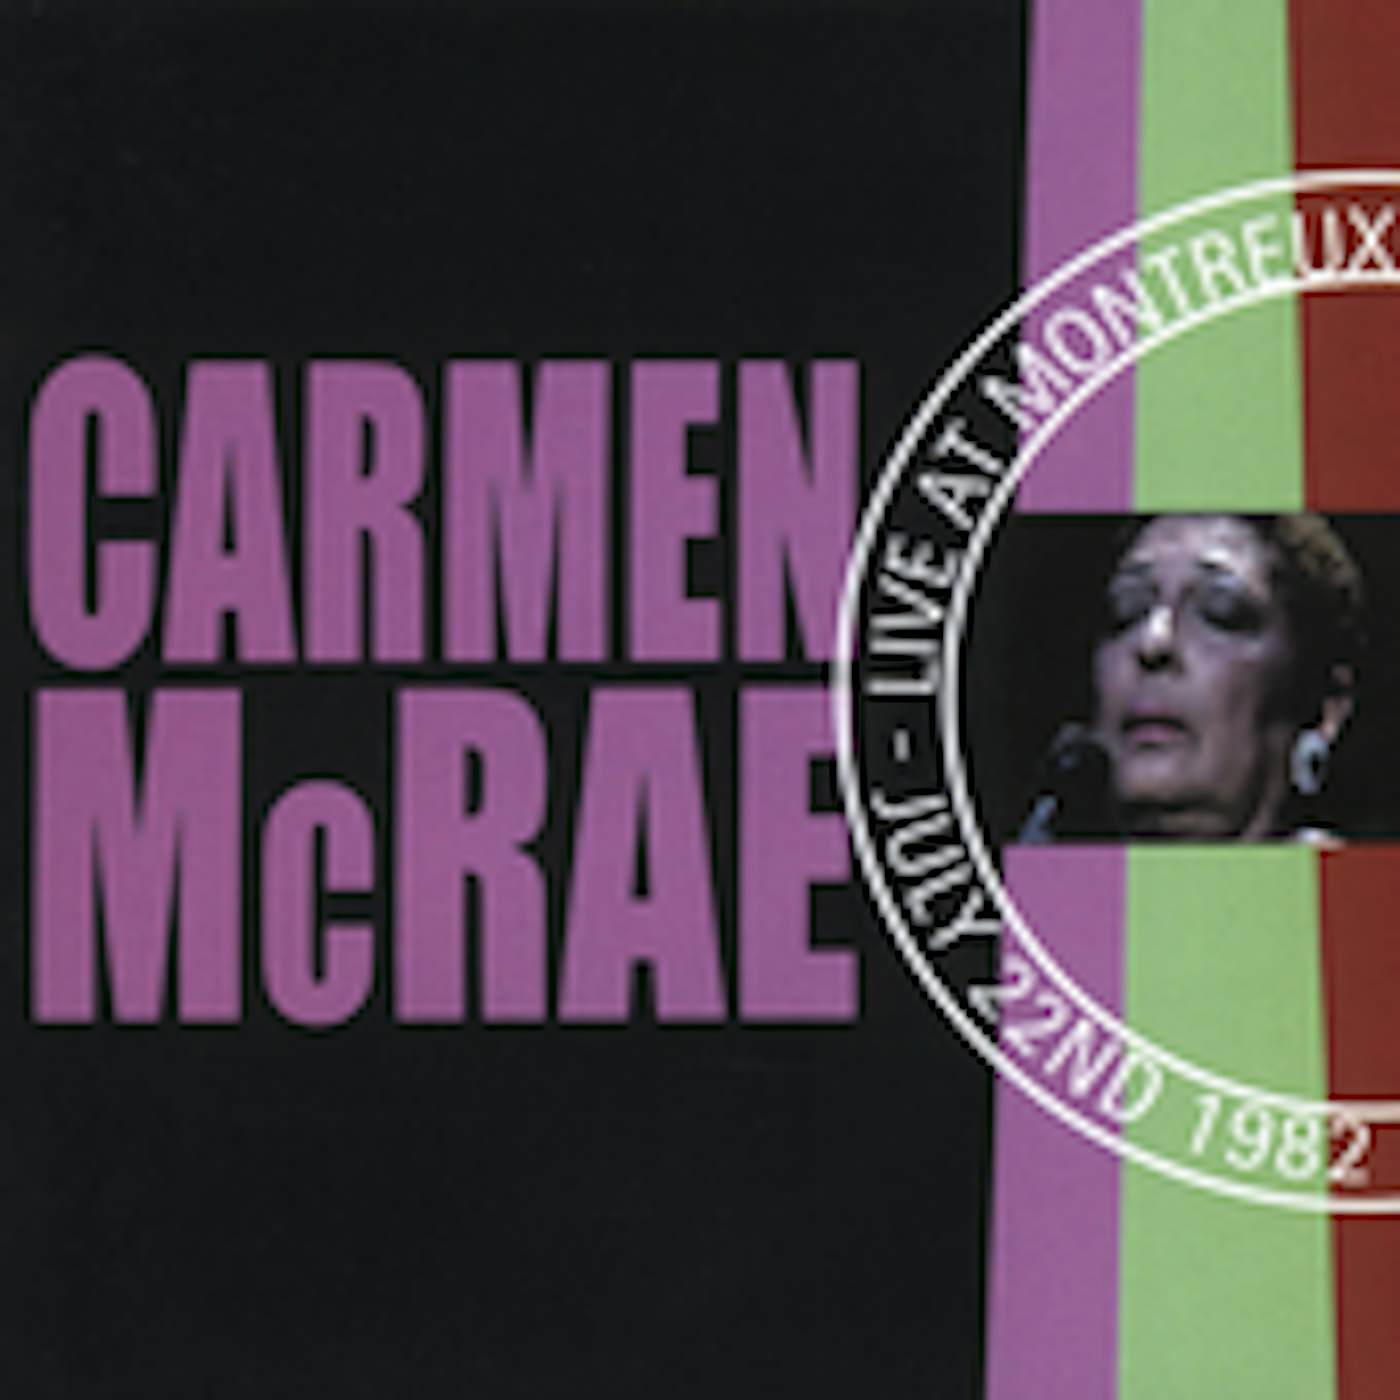 Carmen McRae LIVE AT MONTREUX 1982 CD